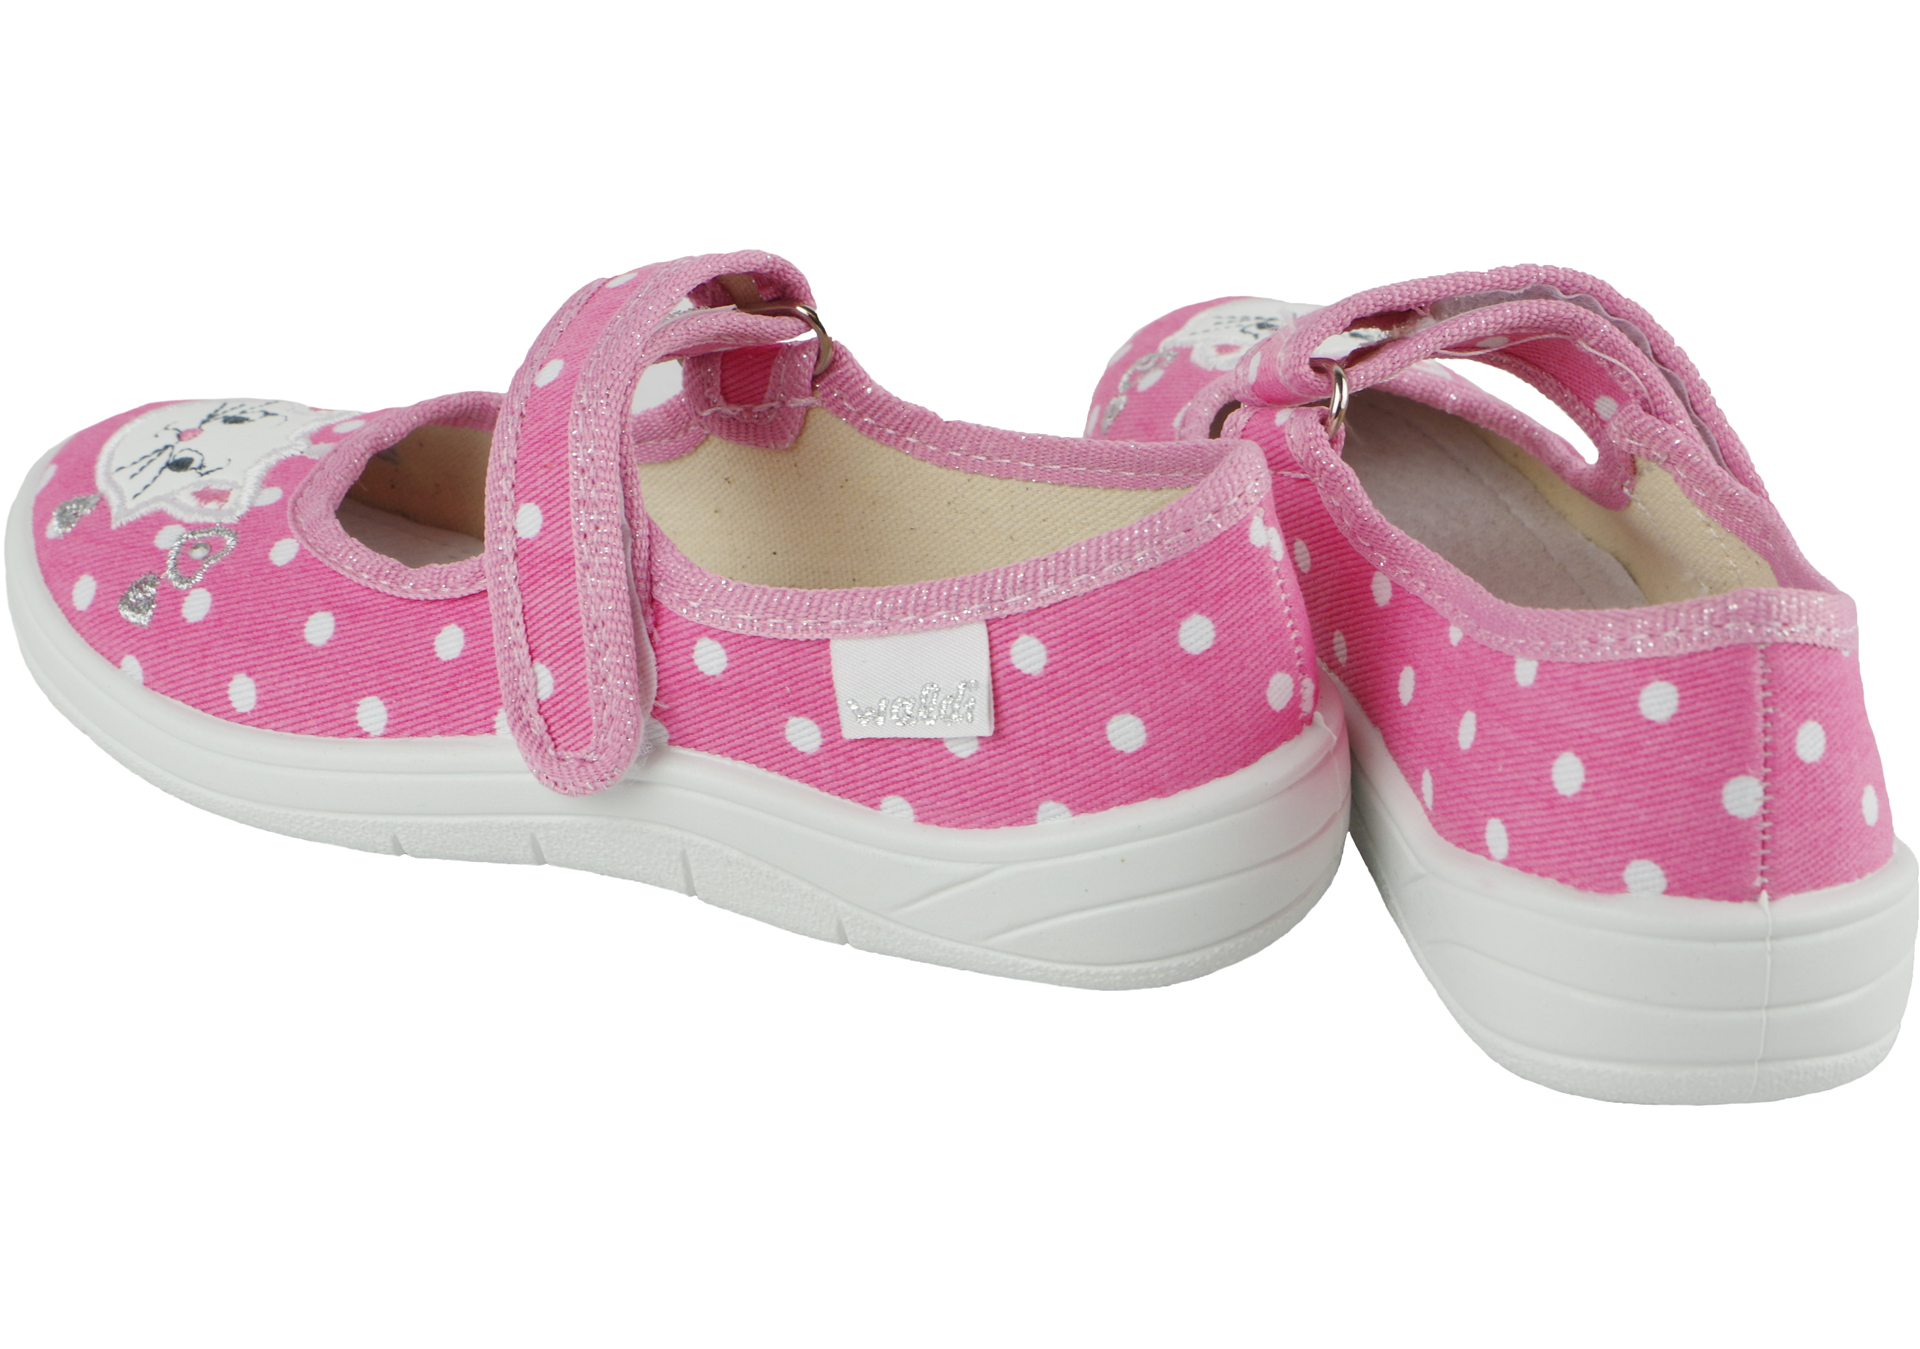 Текстильная обувь для девочек Тапочки Алина (1869) цвет Розовый 24-30 размеры – Sole Kids. Фото 3